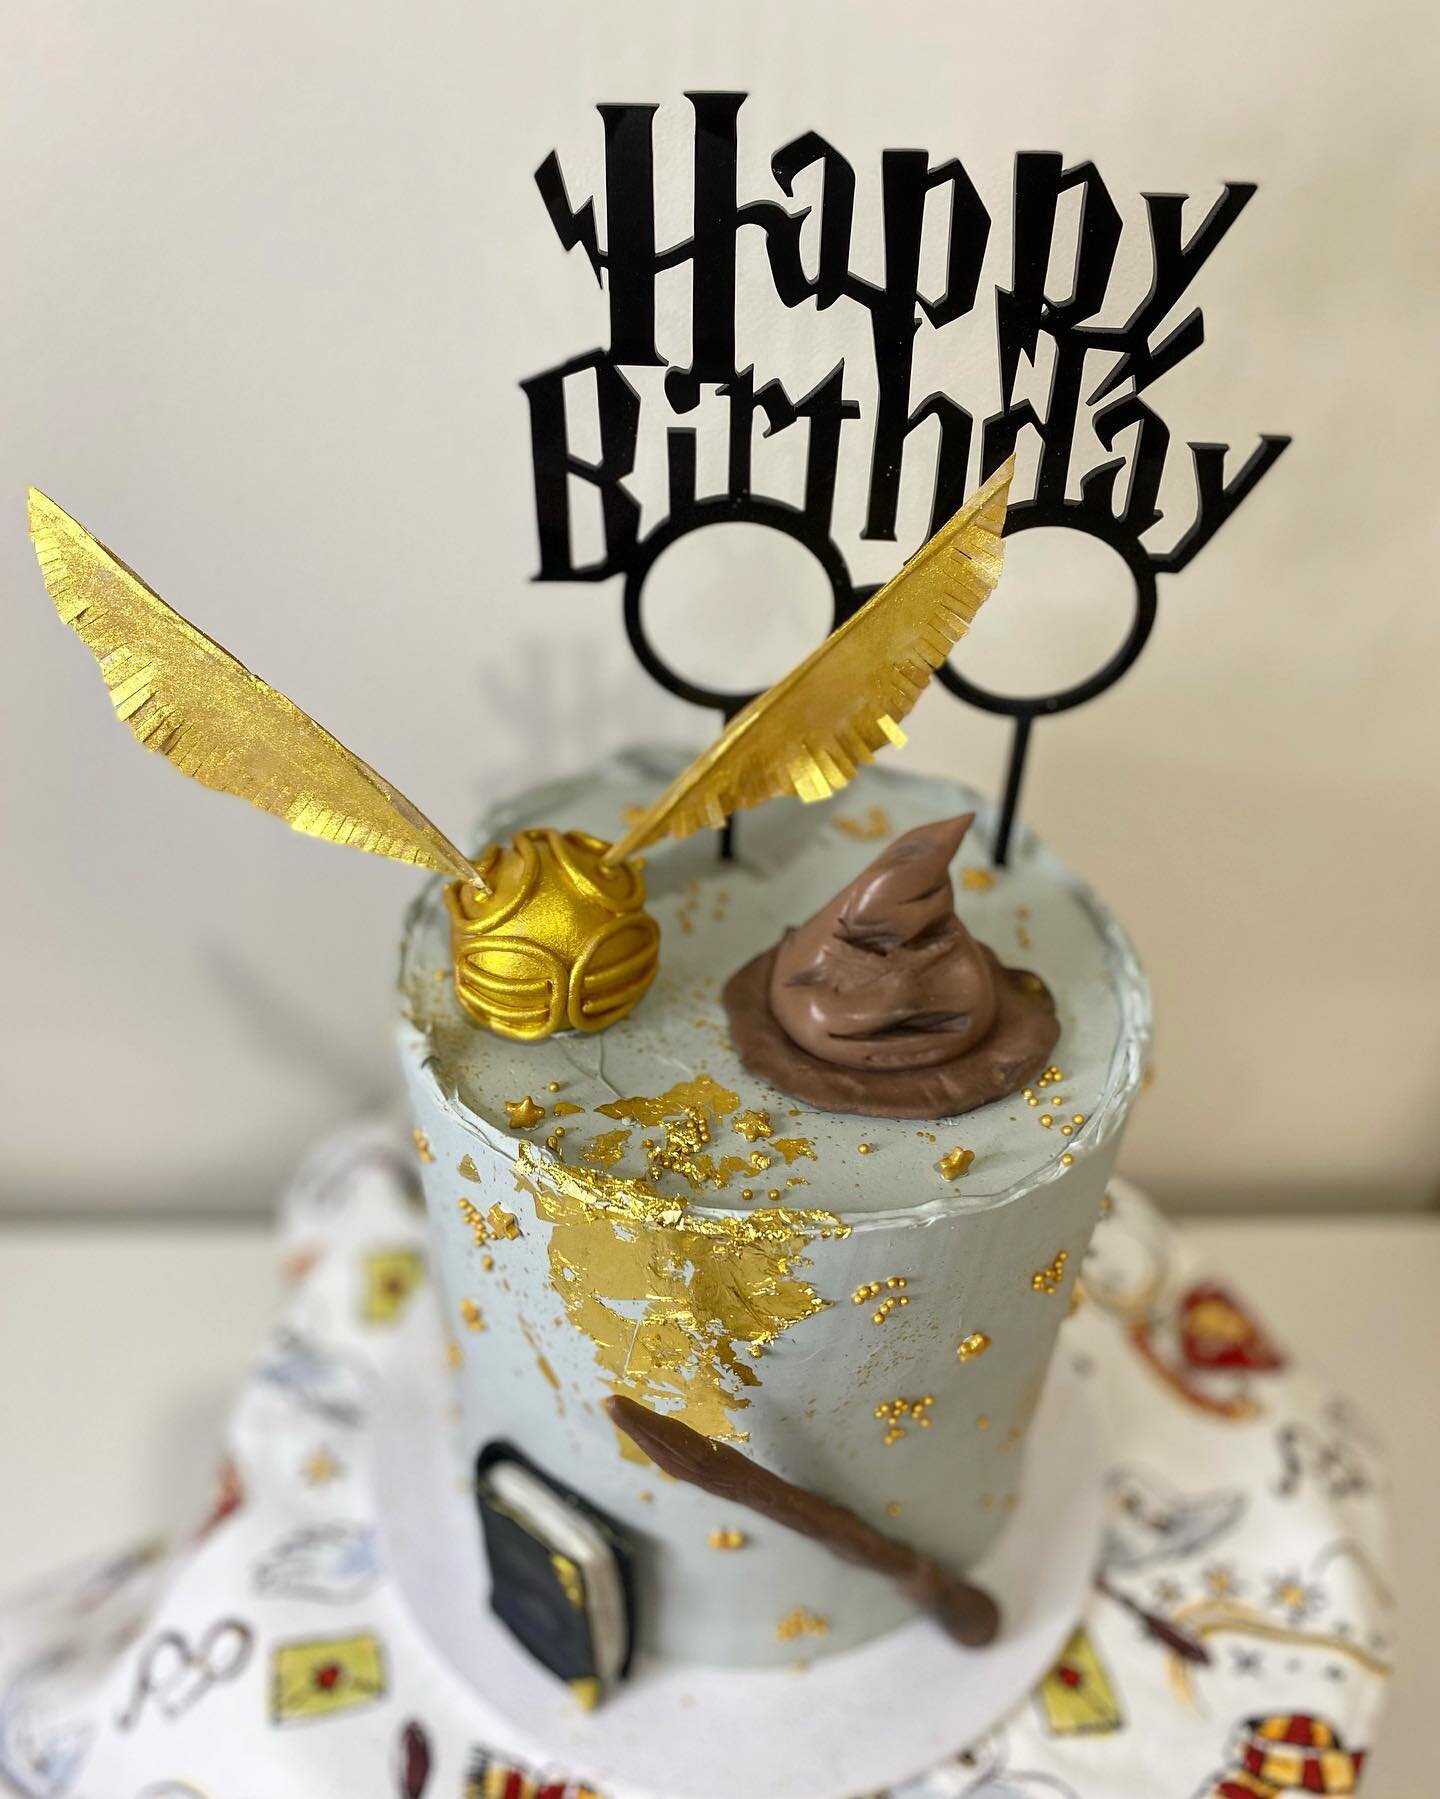 This magical masterpiece deserved a spot on the grid too ✨🪄 

#harrypottercake #harrypotter #cakesofadelaide #birthdaycake #adelaidecakes #weddingcakes #adelaideweddingcakes